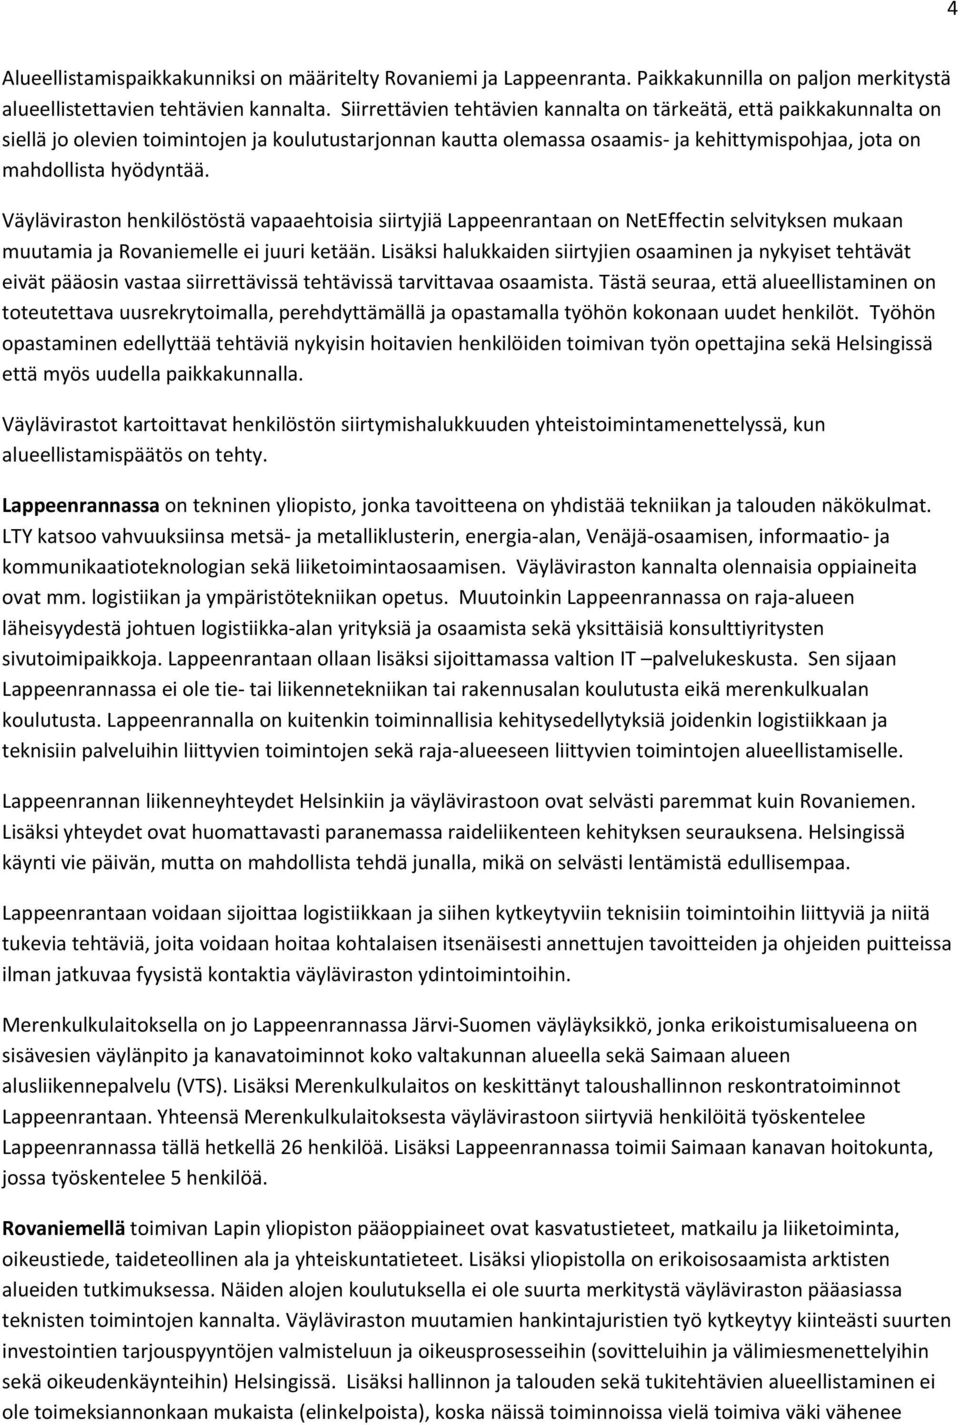 Väyläviraston henkilöstöstä vapaaehtoisia siirtyjiä Lappeenrantaan on NetEffectin selvityksen mukaan muutamia ja Rovaniemelle ei juuri ketään.